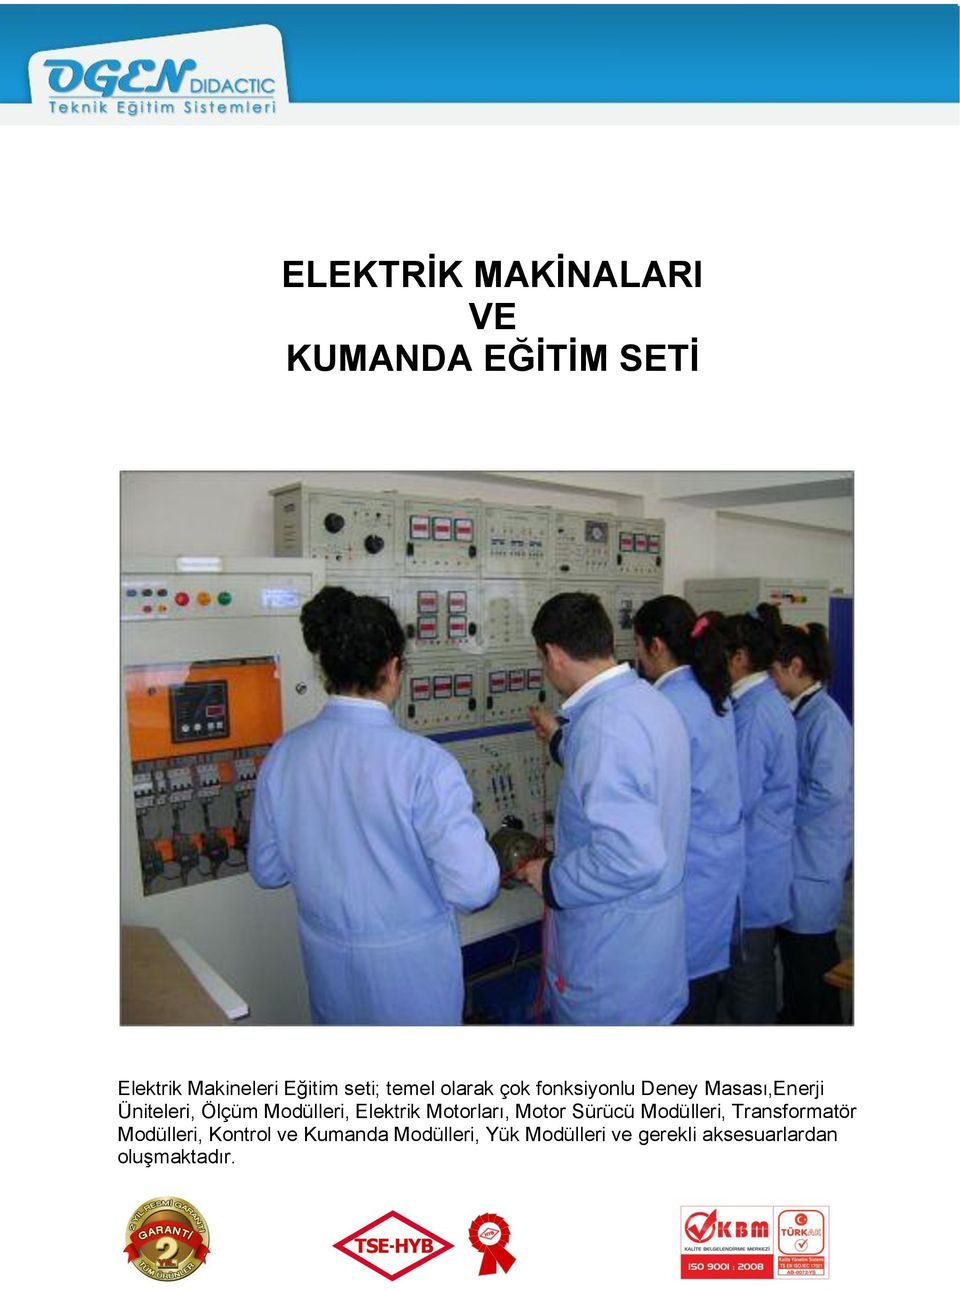 com / Elektrik Makineleri Eğitim seti; temel olarak çok fonksiyonlu Deney Masası,Enerji